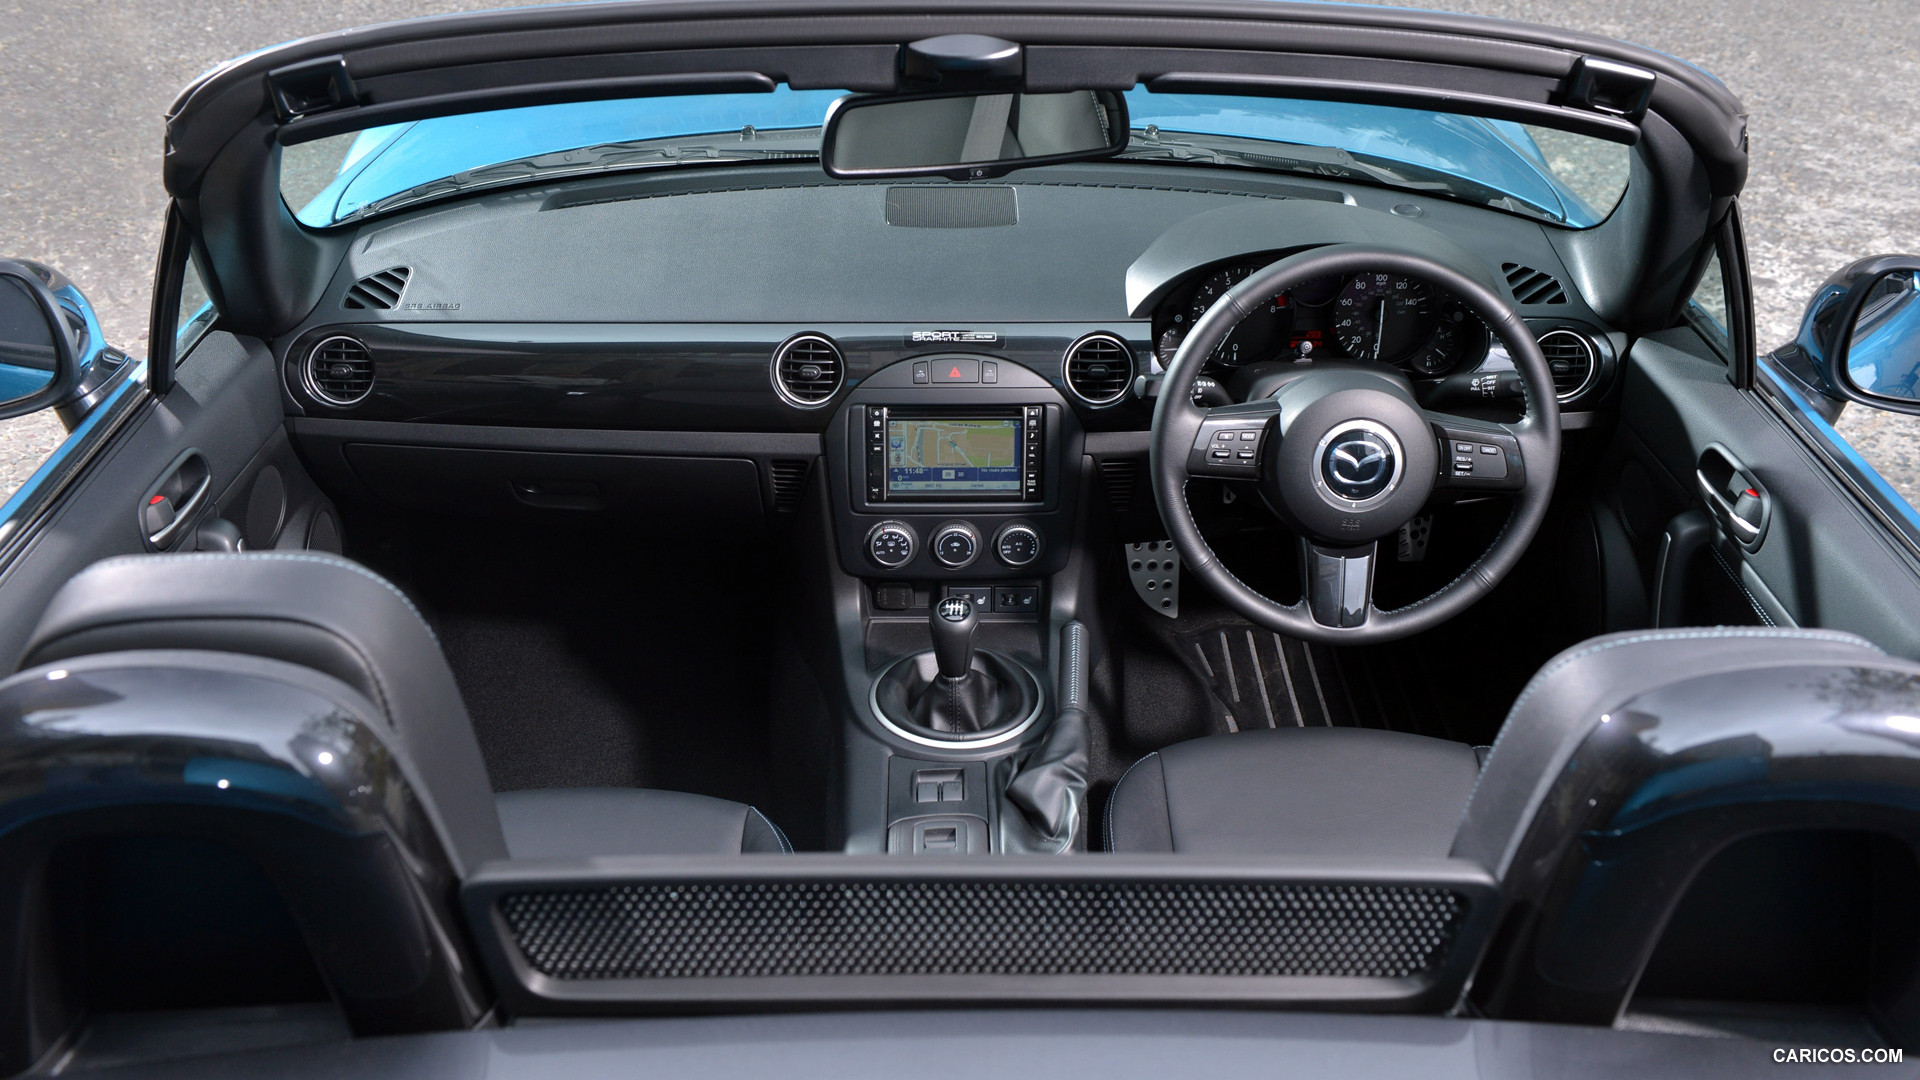 2013 Mazda MX-5 Sport Graphite Limited Edition  - Interior, #8 of 8